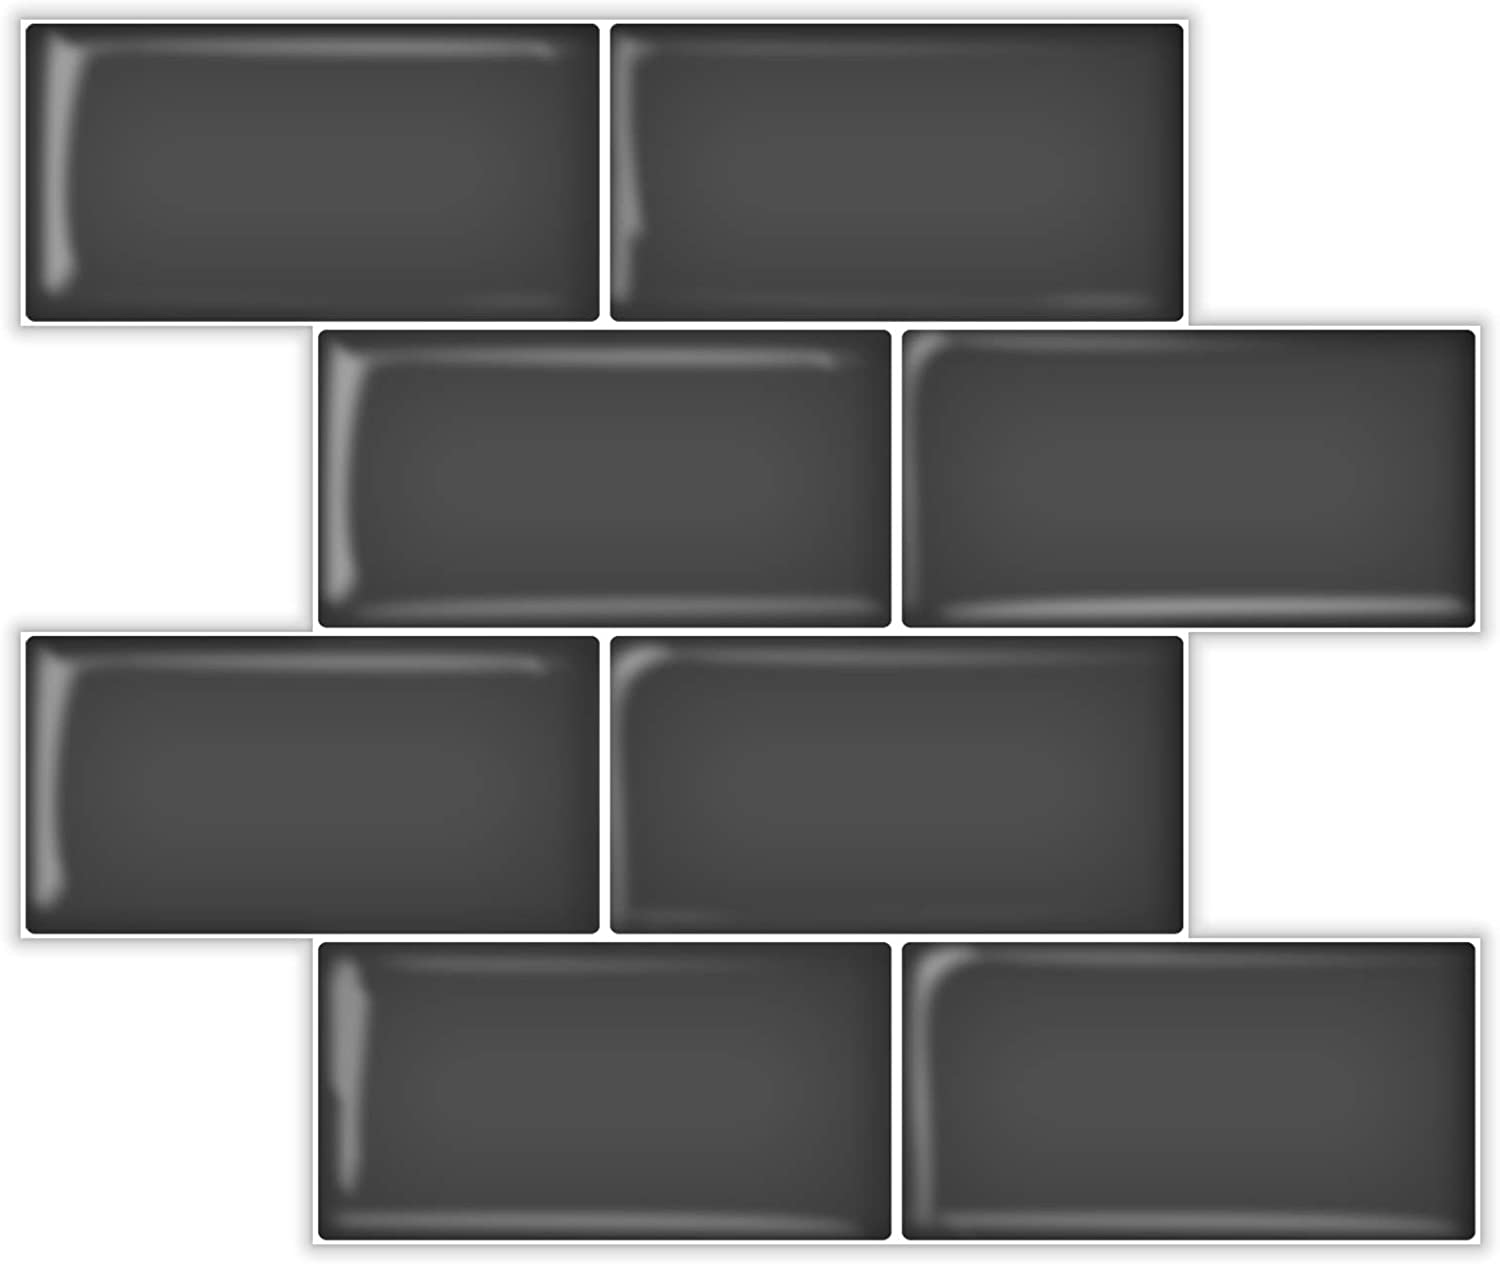 A17726-Art3d Subway Tiles Peel and Stick Backsplash, Stick on Tiles Kitchen Backsplash (10 Tiles, Thicker Version)